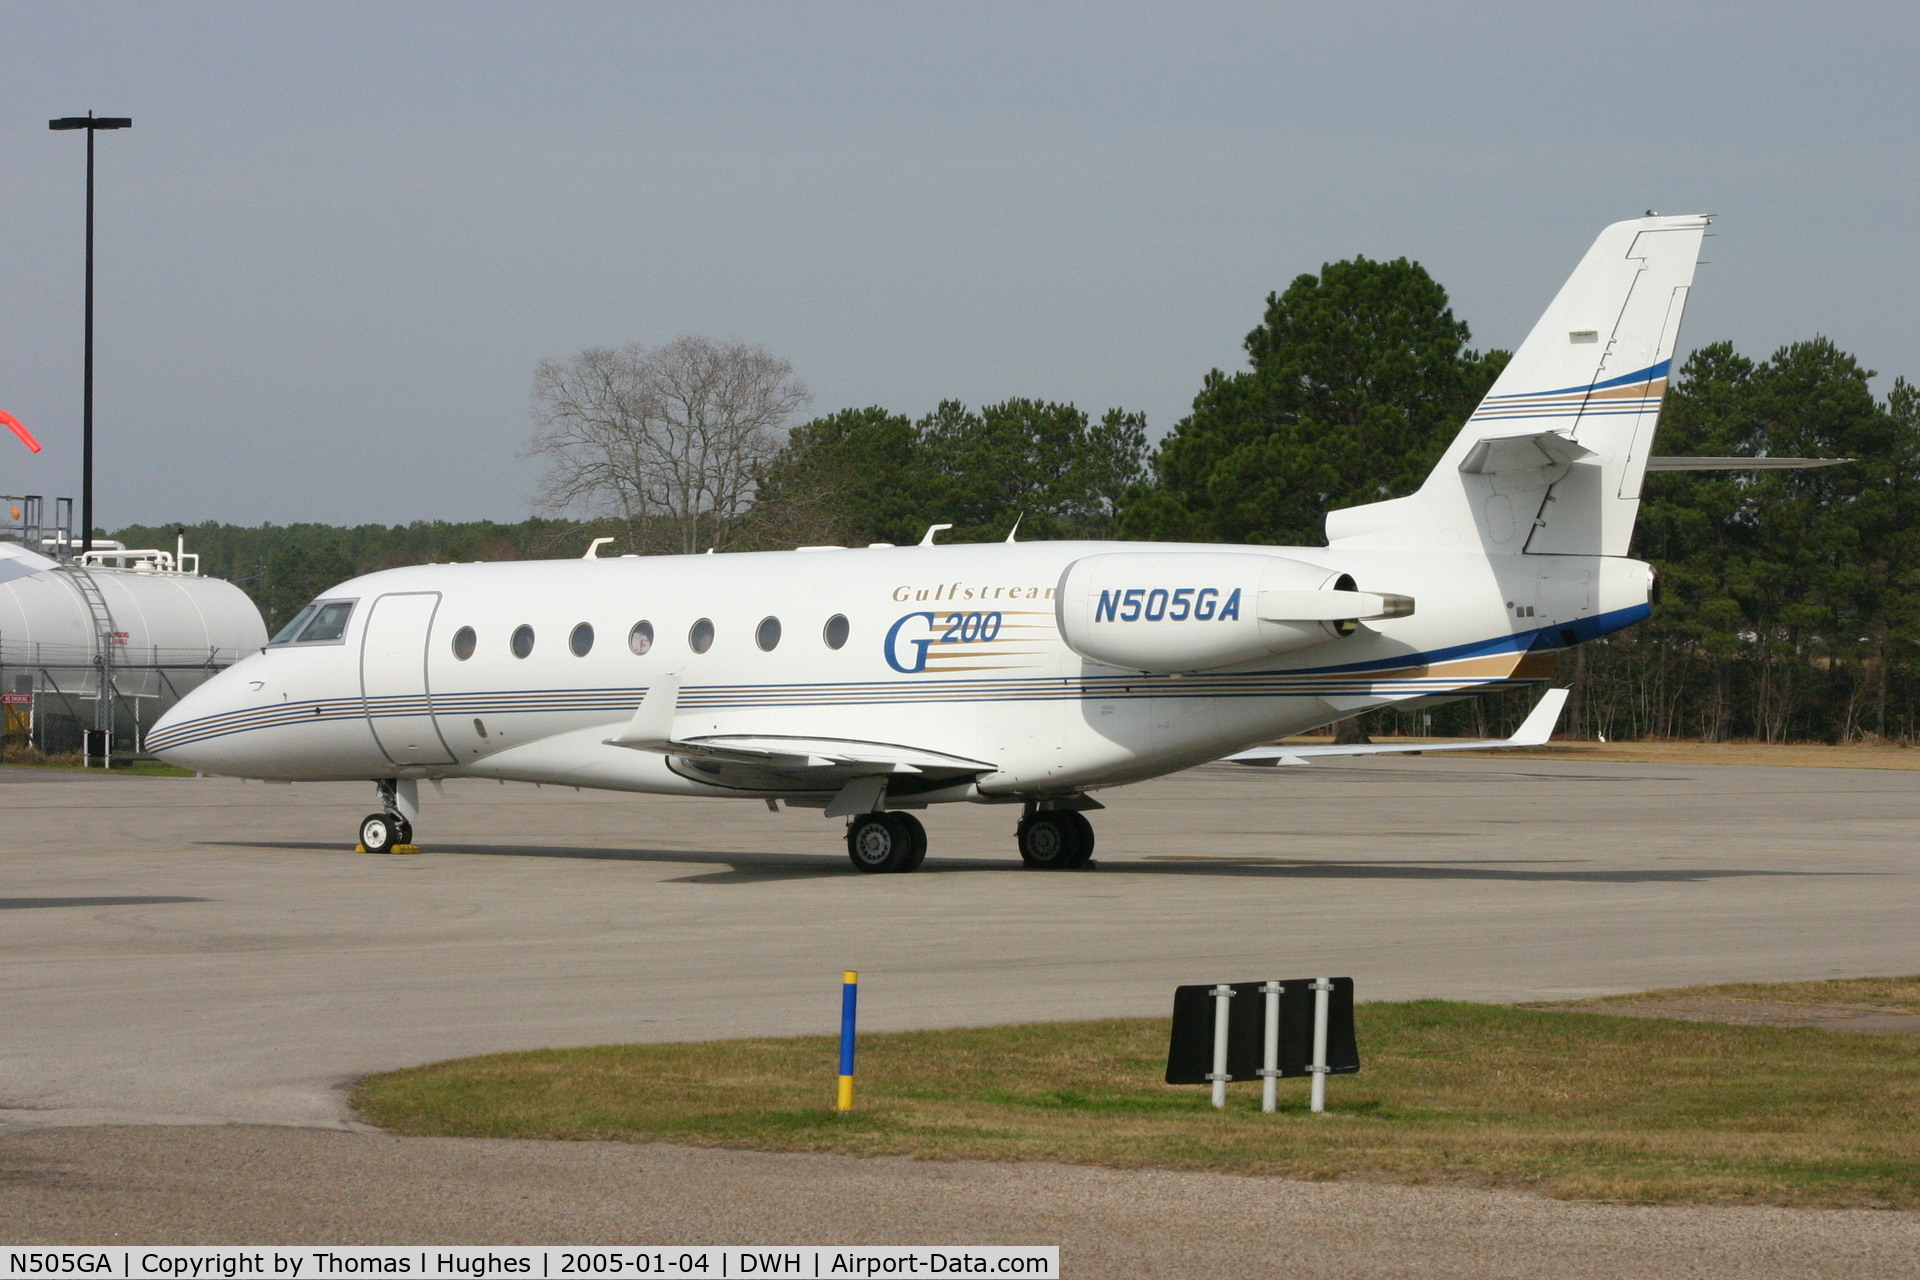 N505GA, 1999 Israel Aircraft Industries GULFSTREAM 200 C/N 005, Gulfstream G200